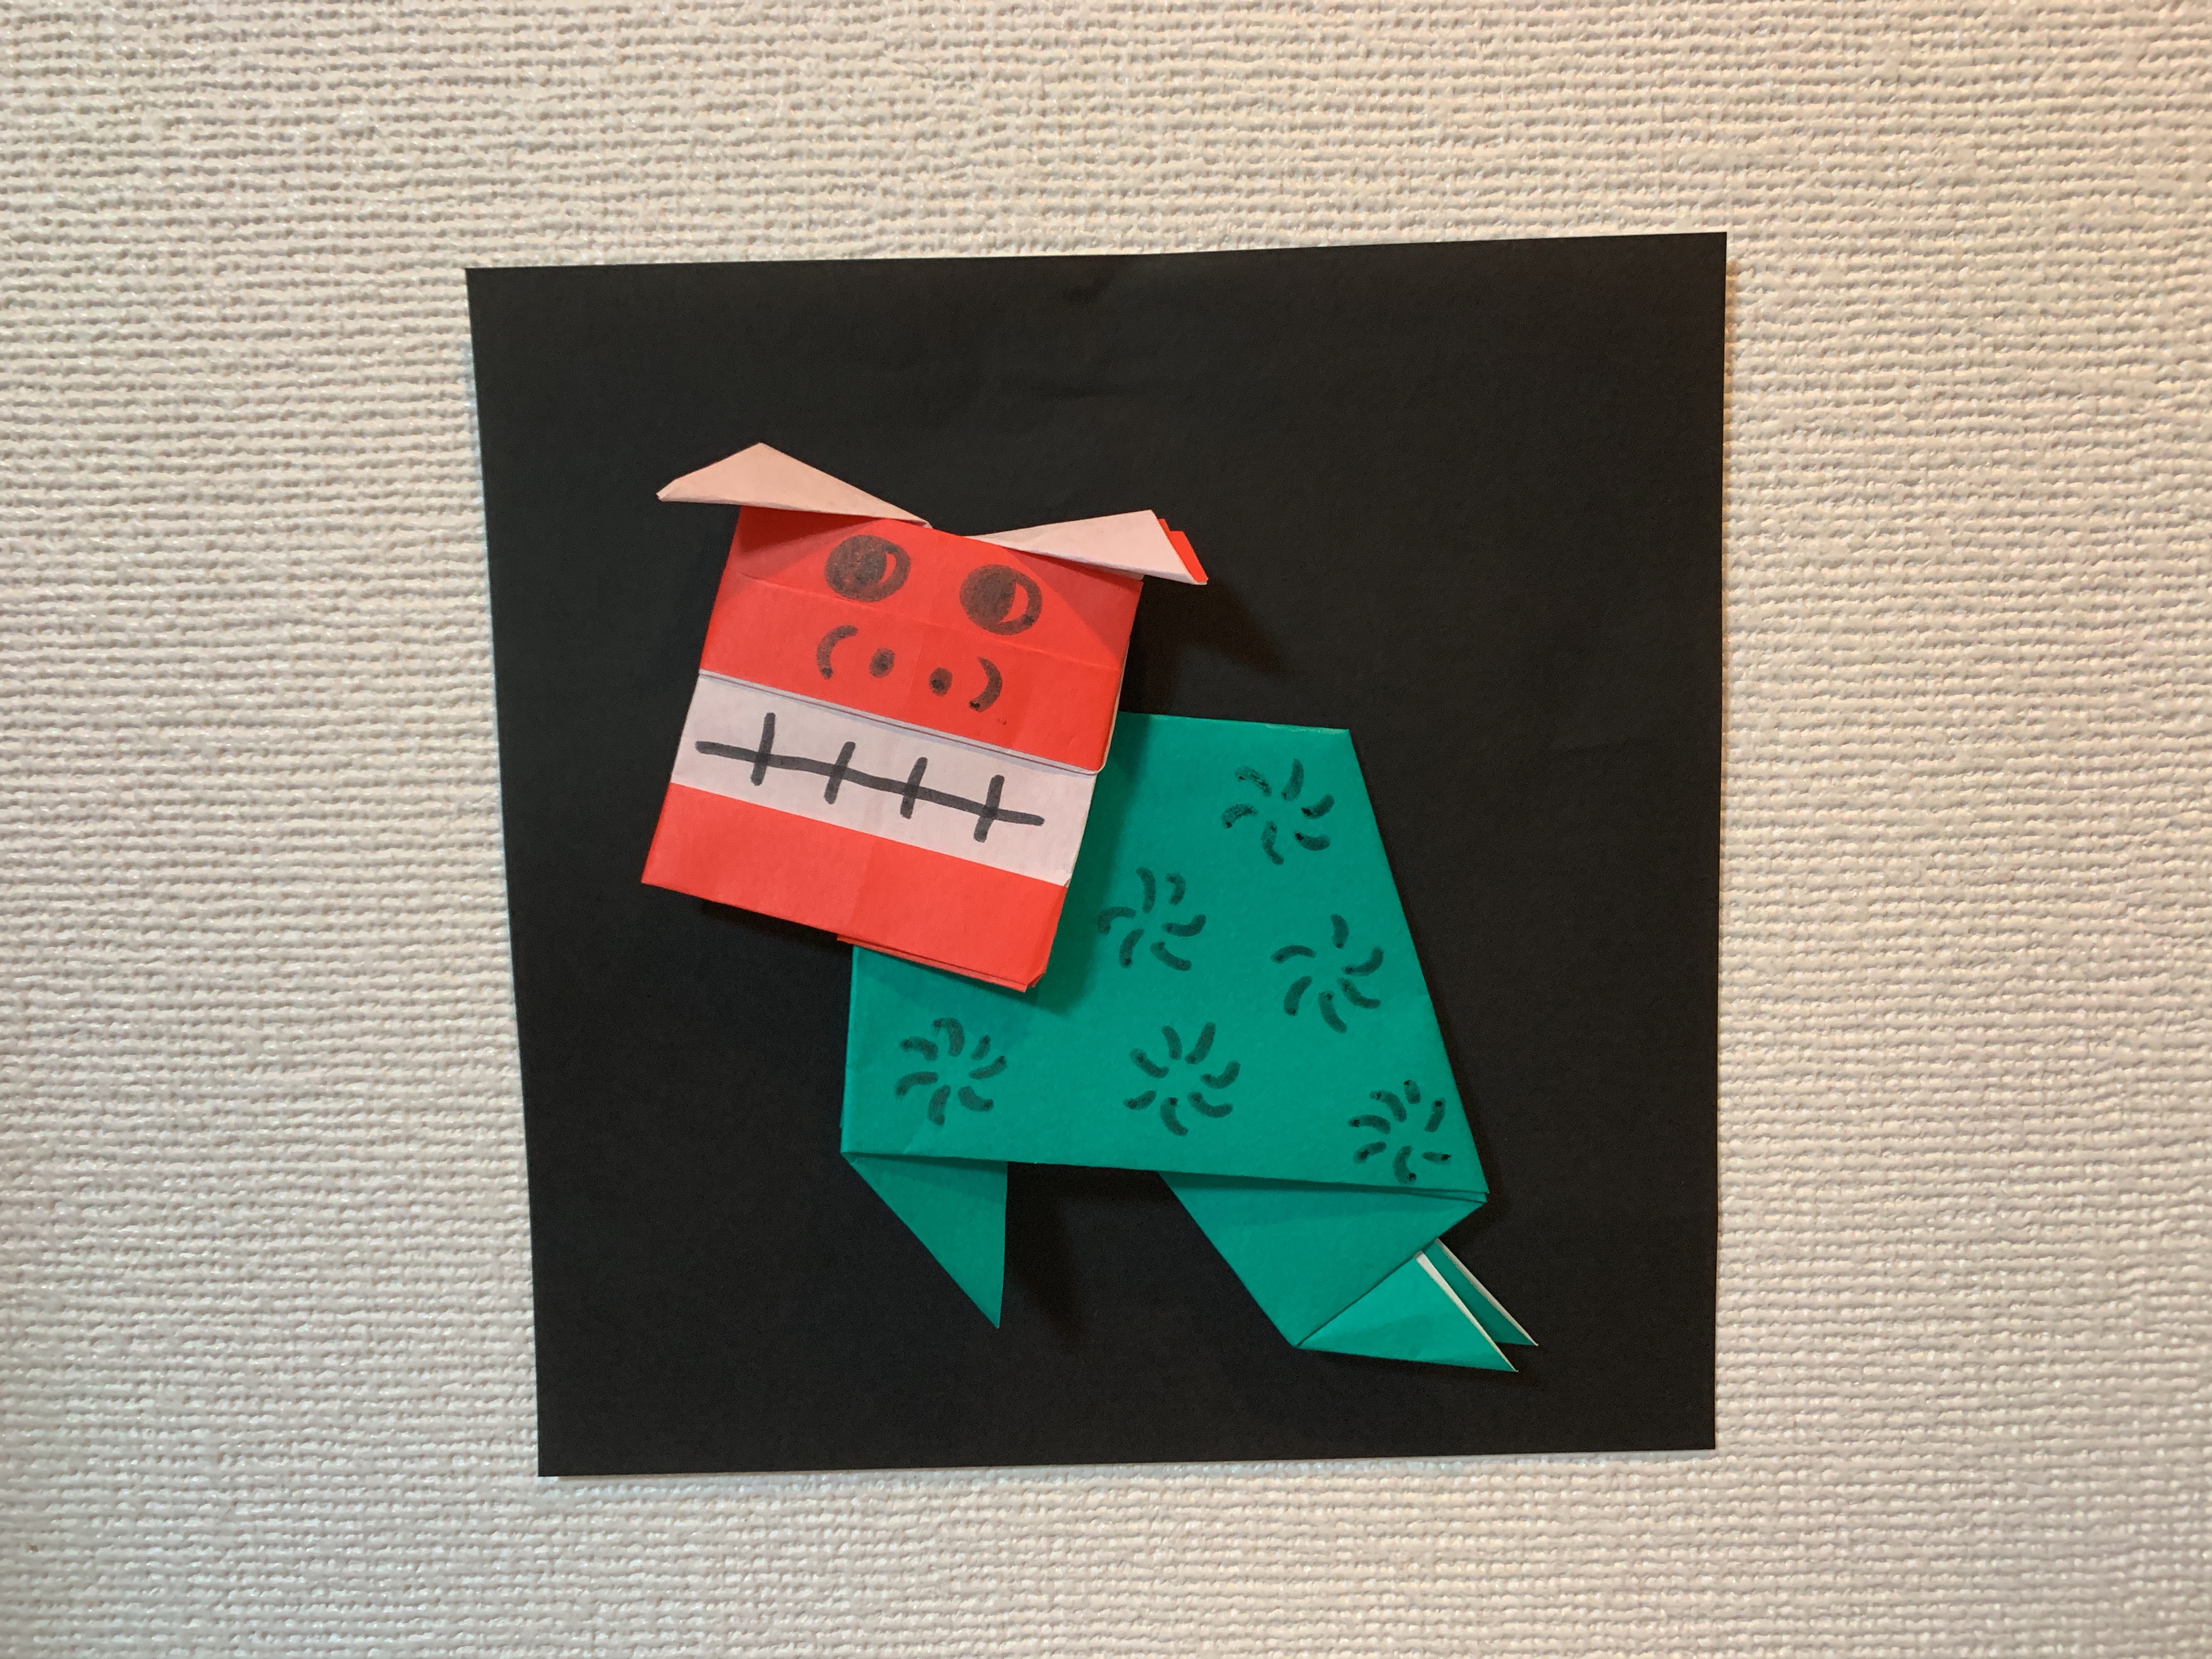 折り紙でお正月飾りを作ろう 3歳でもできる簡単なデザイン5選